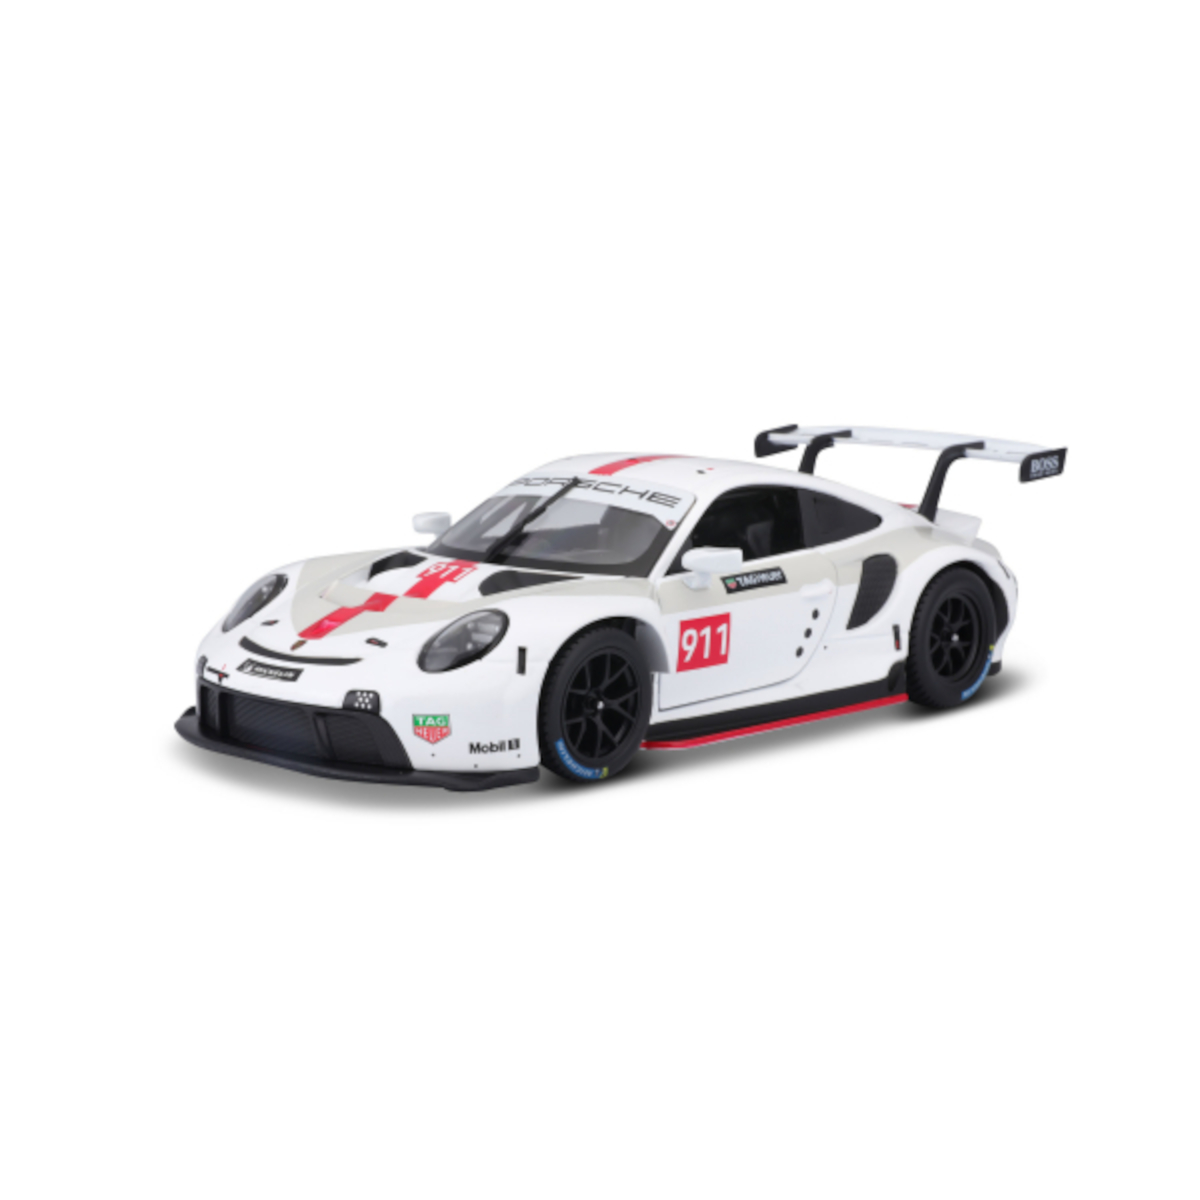 RSR - - Maßstab 18-38302 1:43) Spielzeugauto BBURAGO 911 Porsche (weiß, Modellauto